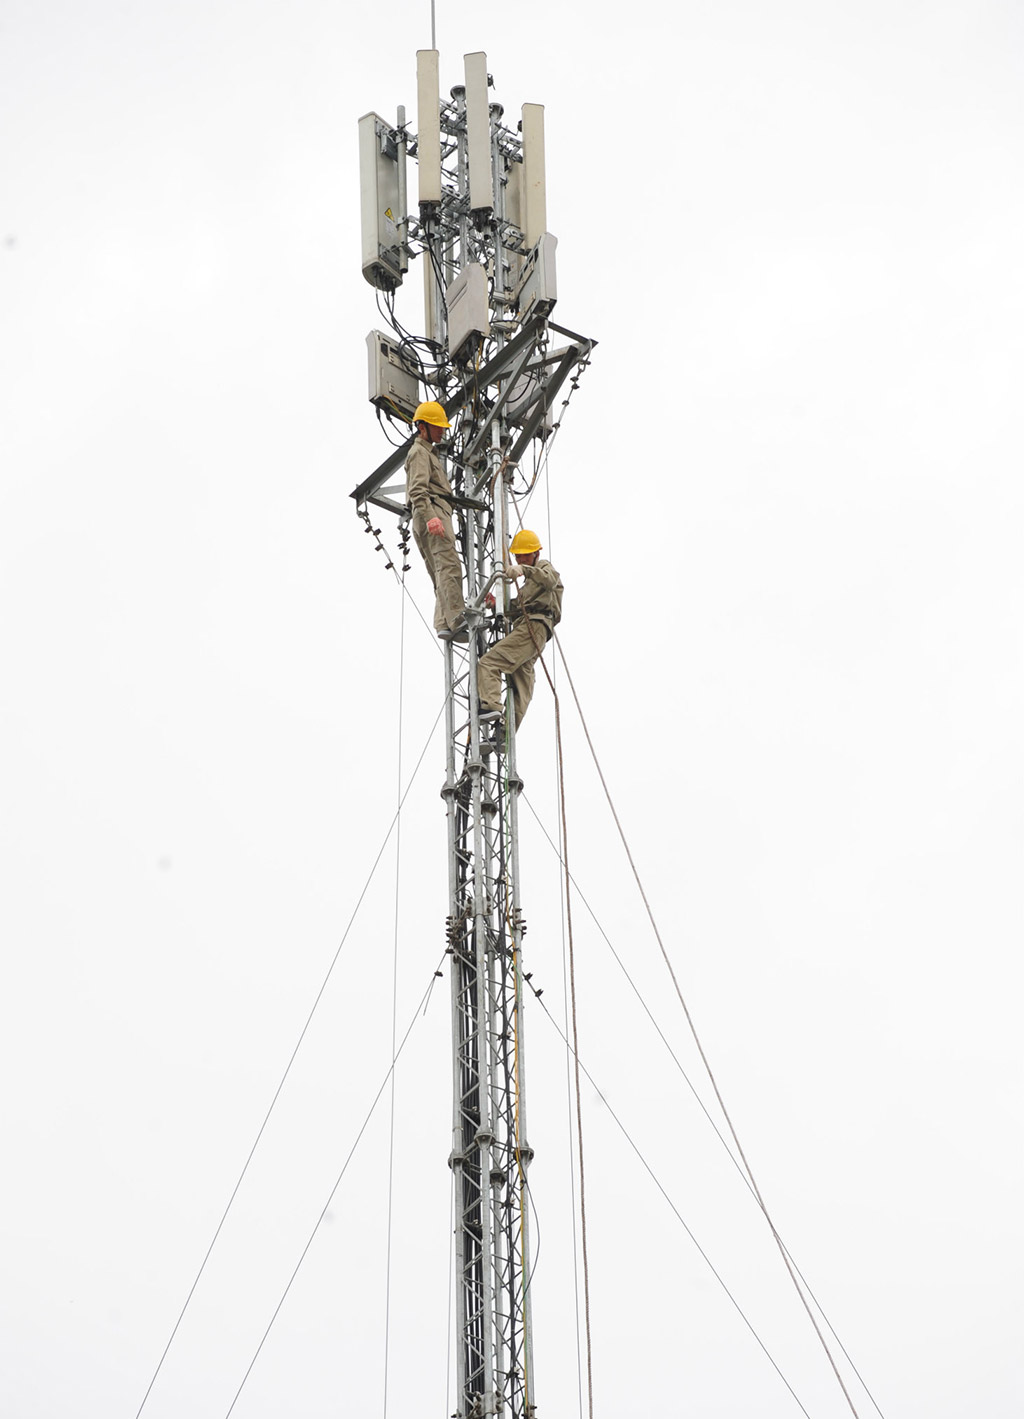 Triển khai lắp đặt thiết bị phát sóng 4G tại trạm